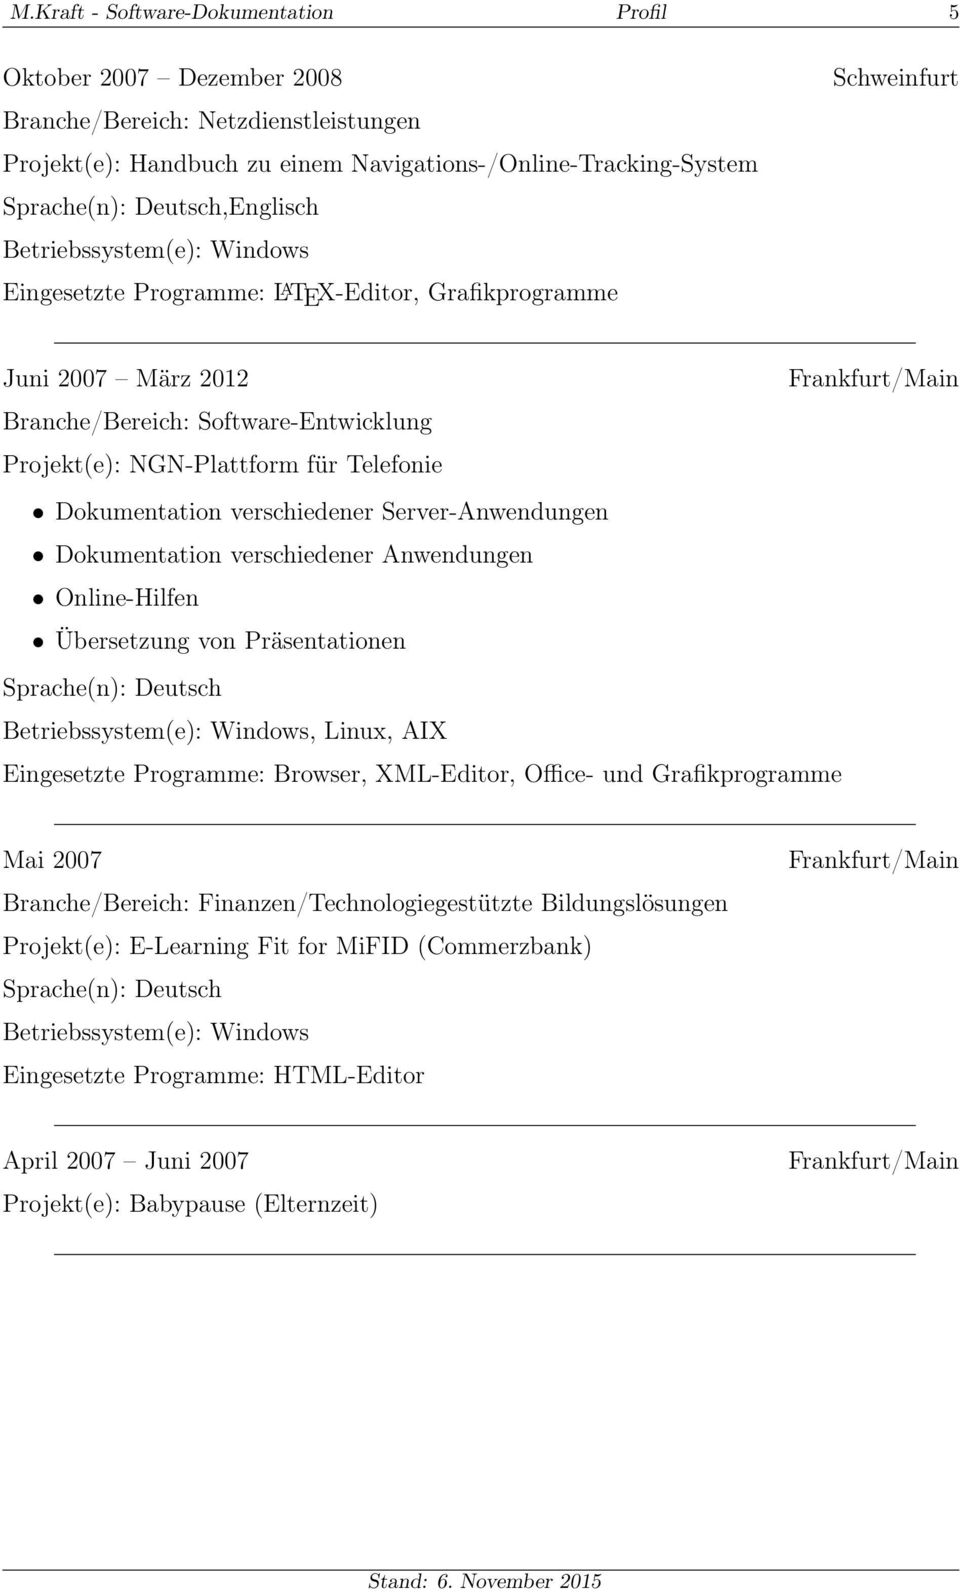 Dokumentation verschiedener Anwendungen Online-Hilfen Übersetzung von Präsentationen, Linux, AIX Eingesetzte Programme: Browser, XML-Editor, Office- und Grafikprogramme Mai 2007